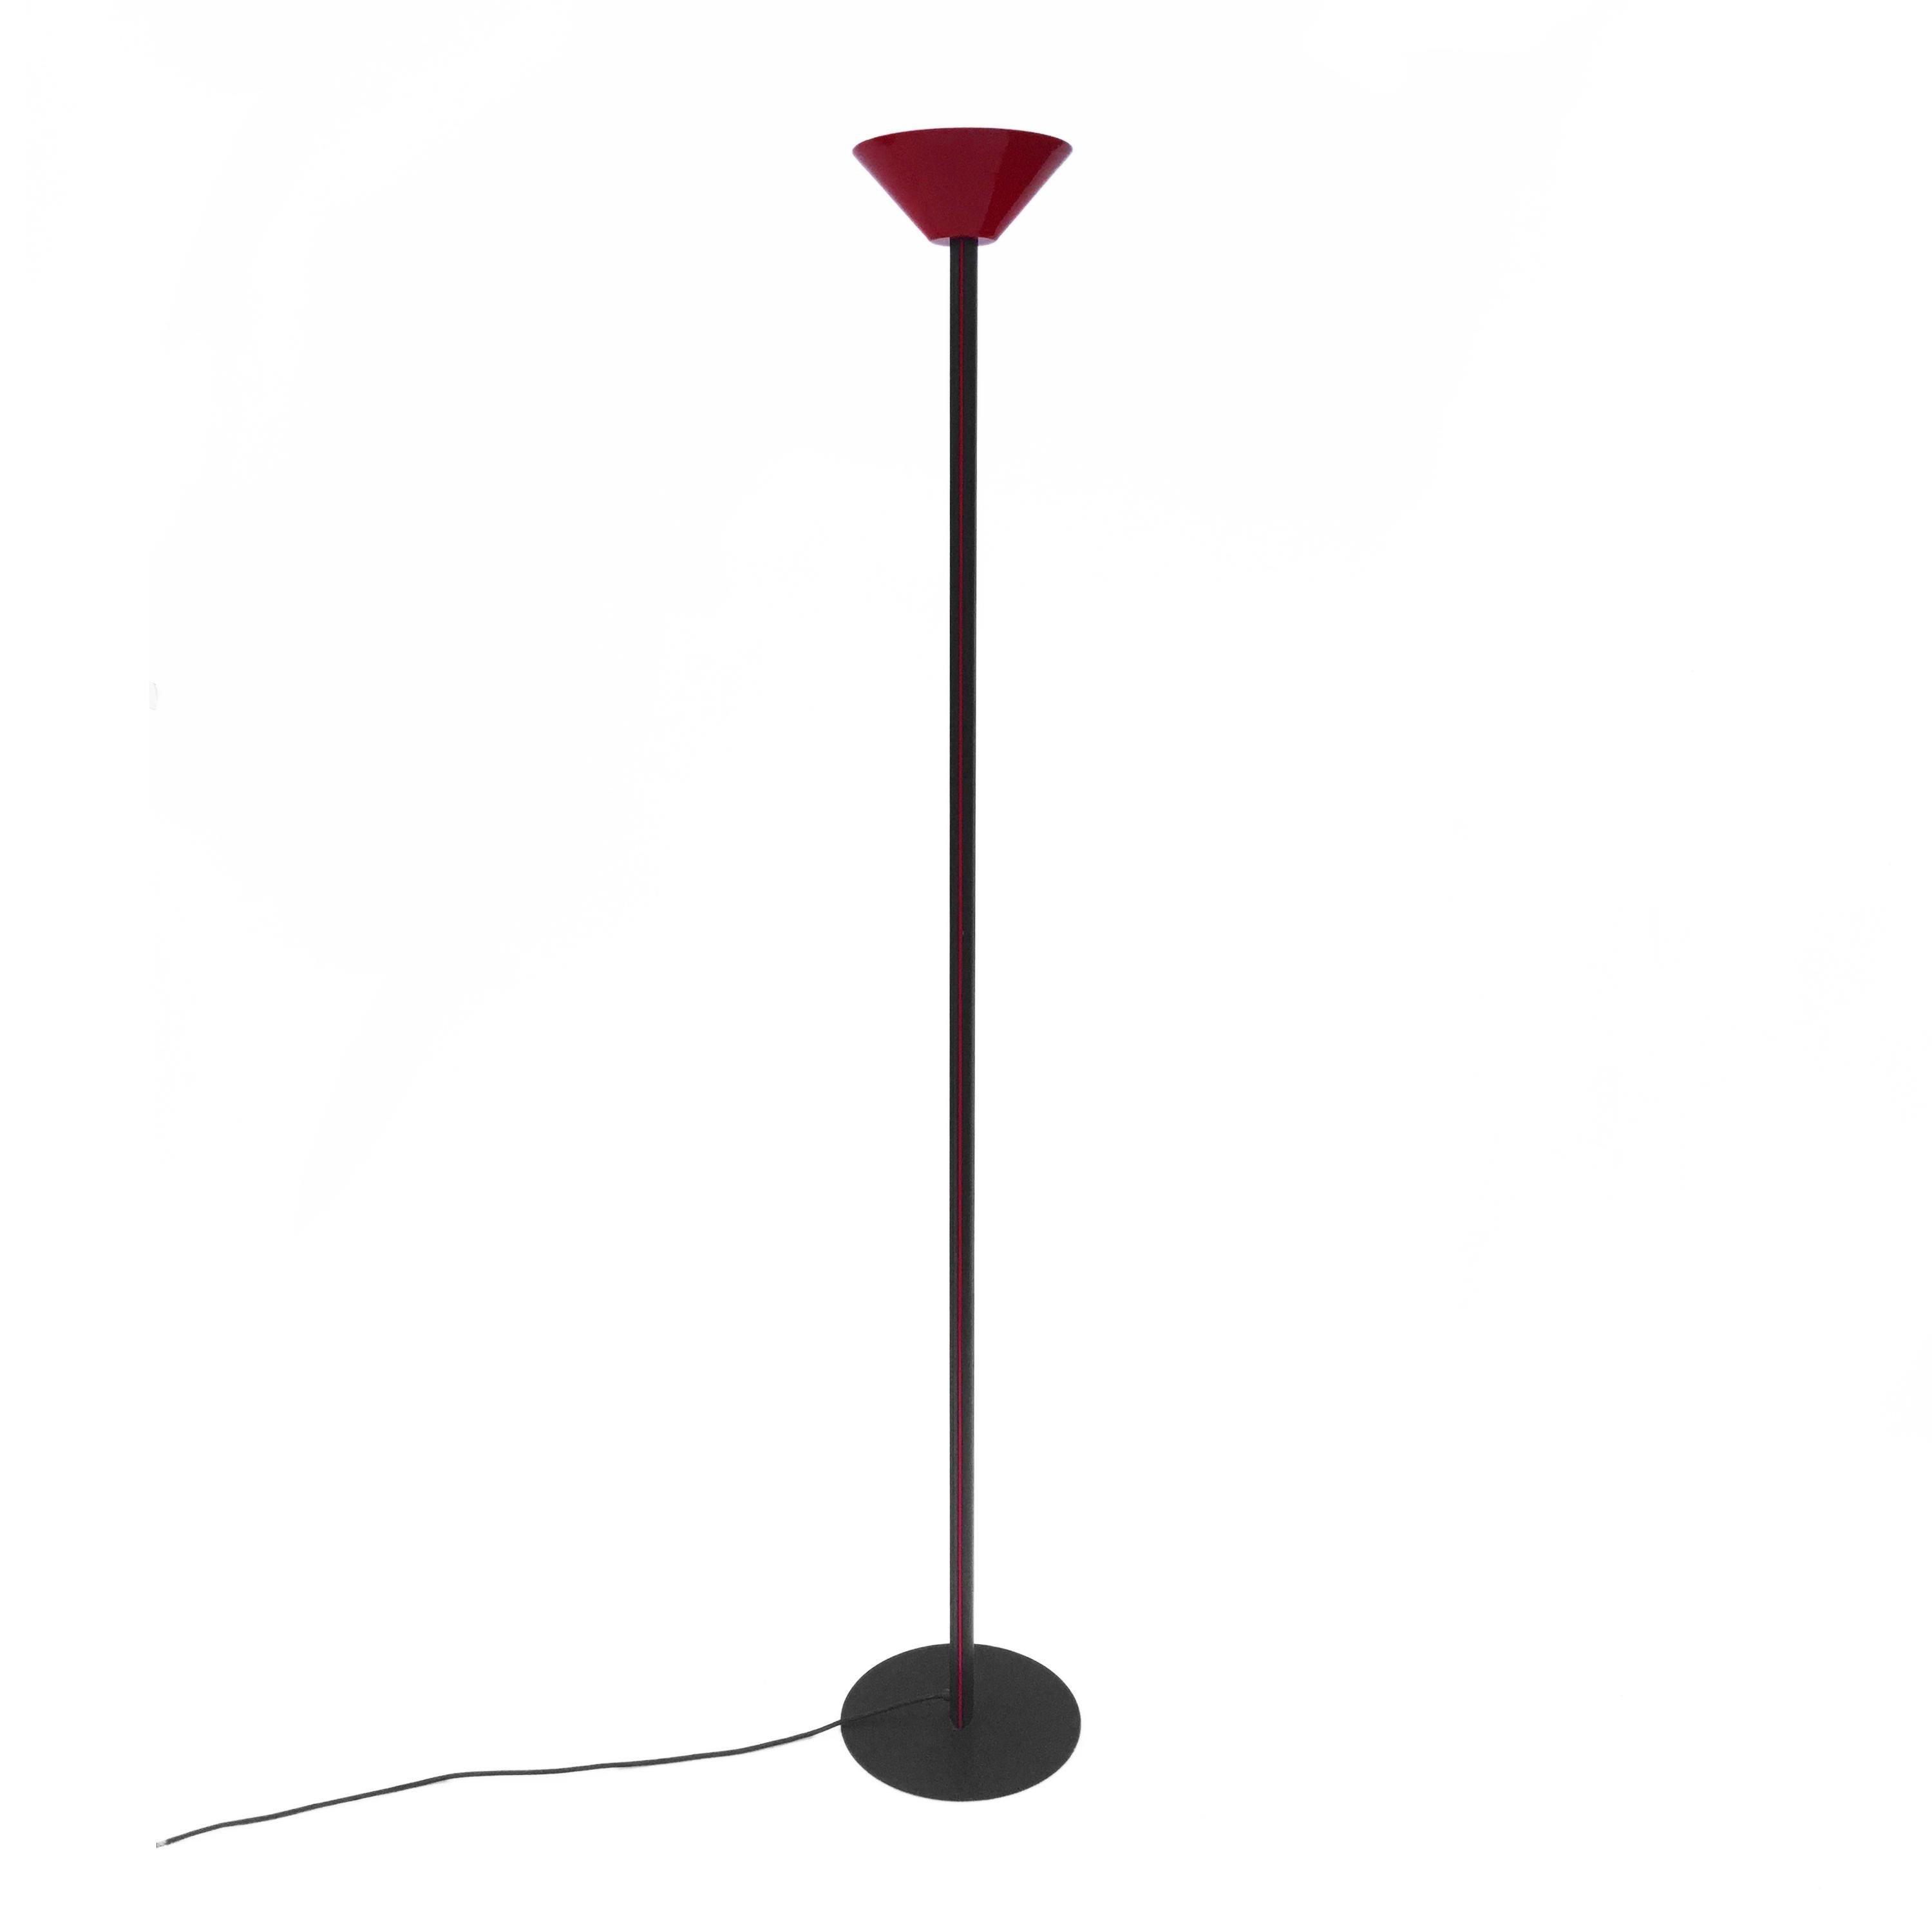 Post-Modern Memphis Inspired Uplighters 1980s Floor Lamp Red Black Postmodern Sottsass Style For Sale